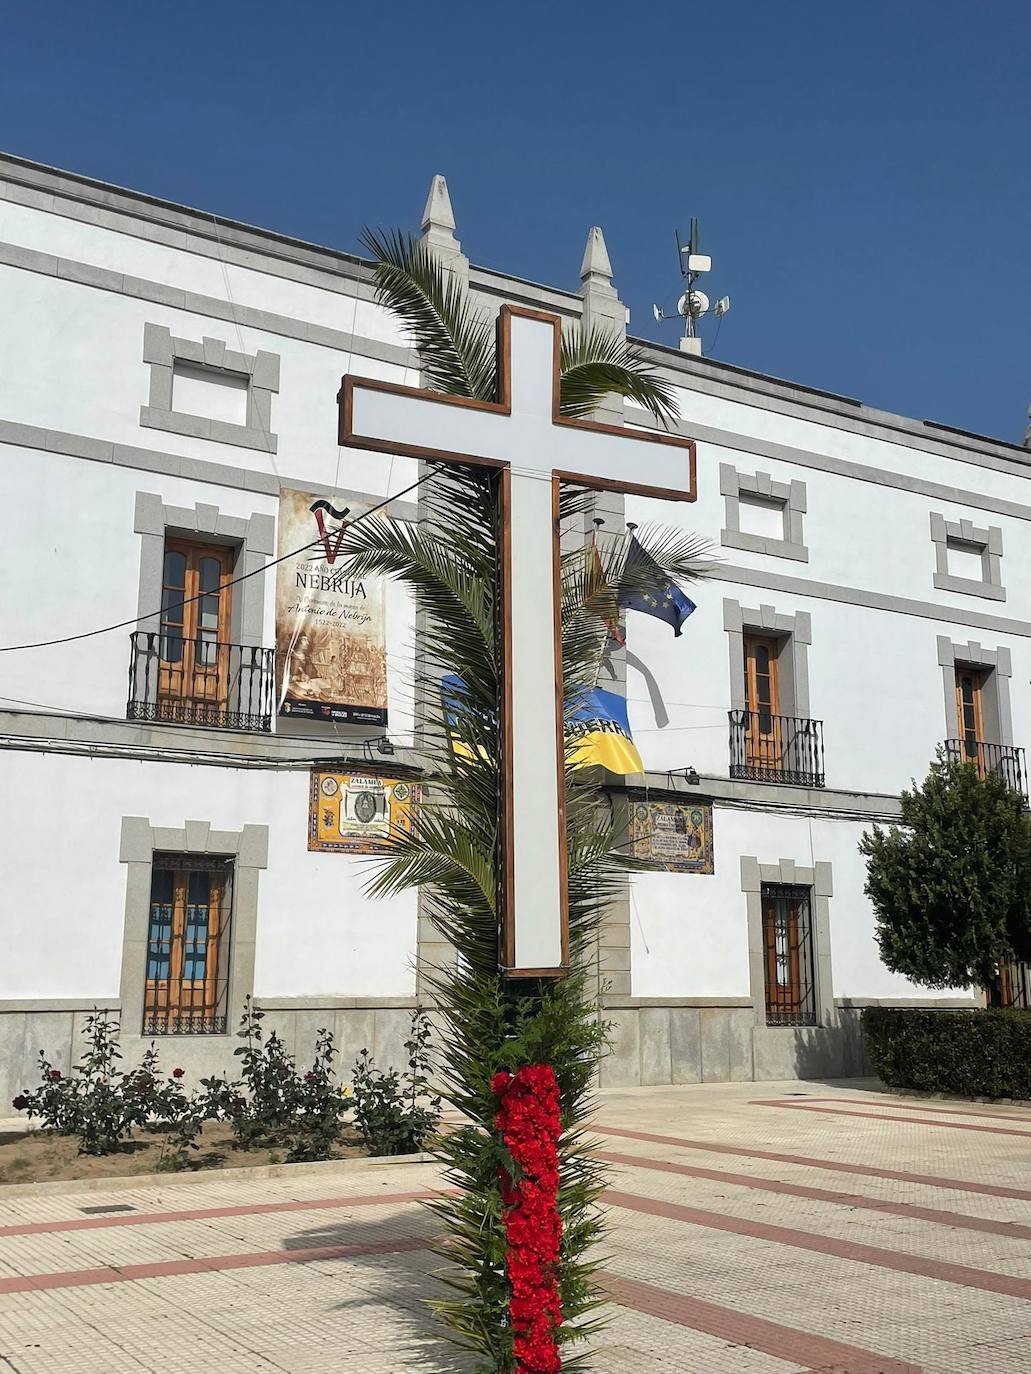 Publicadas la ubicación de las Cruces de Mayo inscritas en el concurso